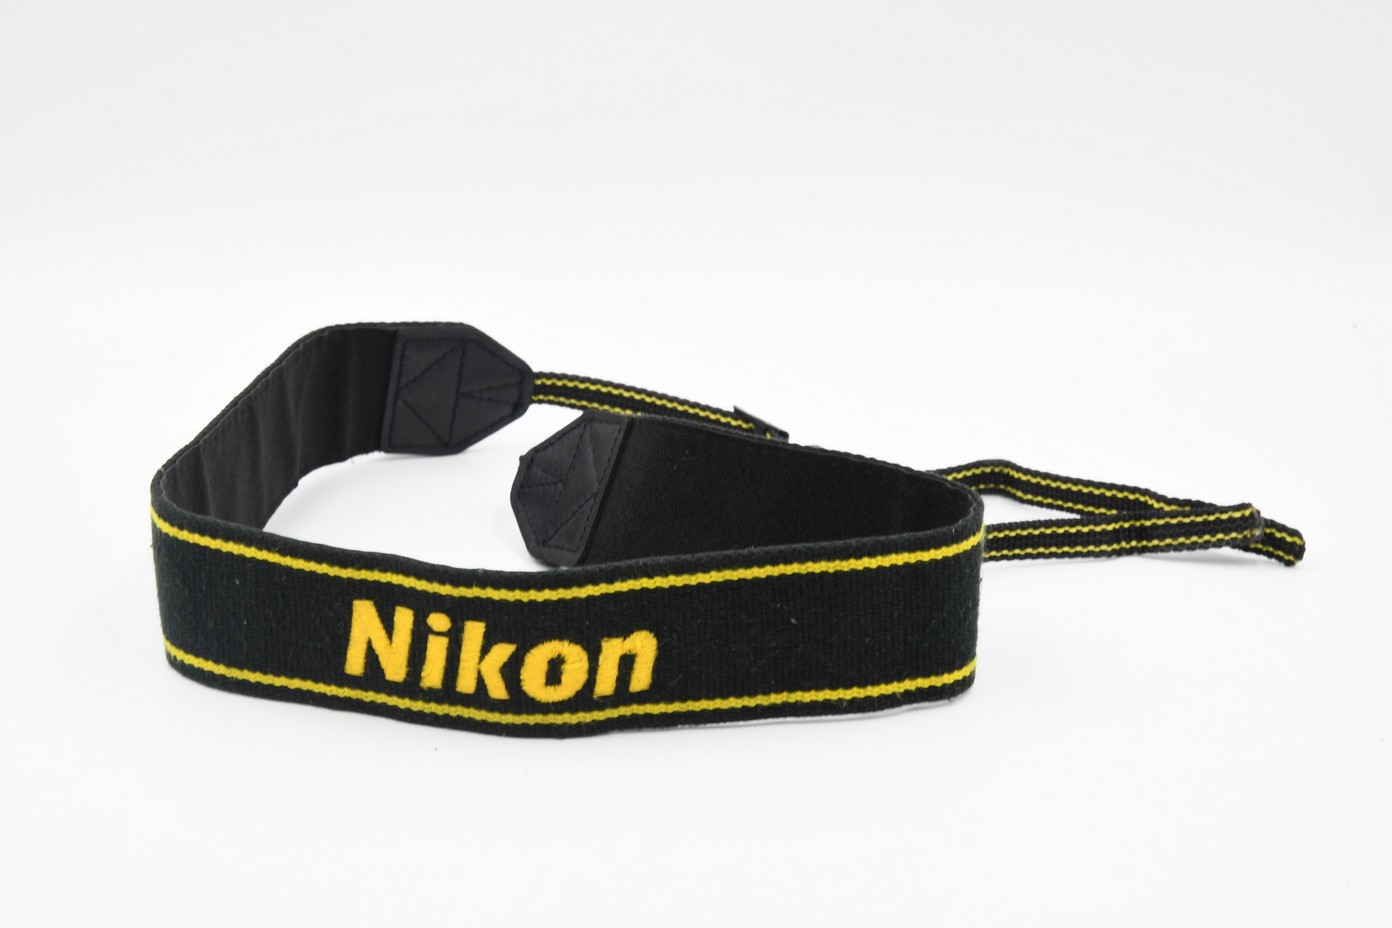    Nikon (..  4)